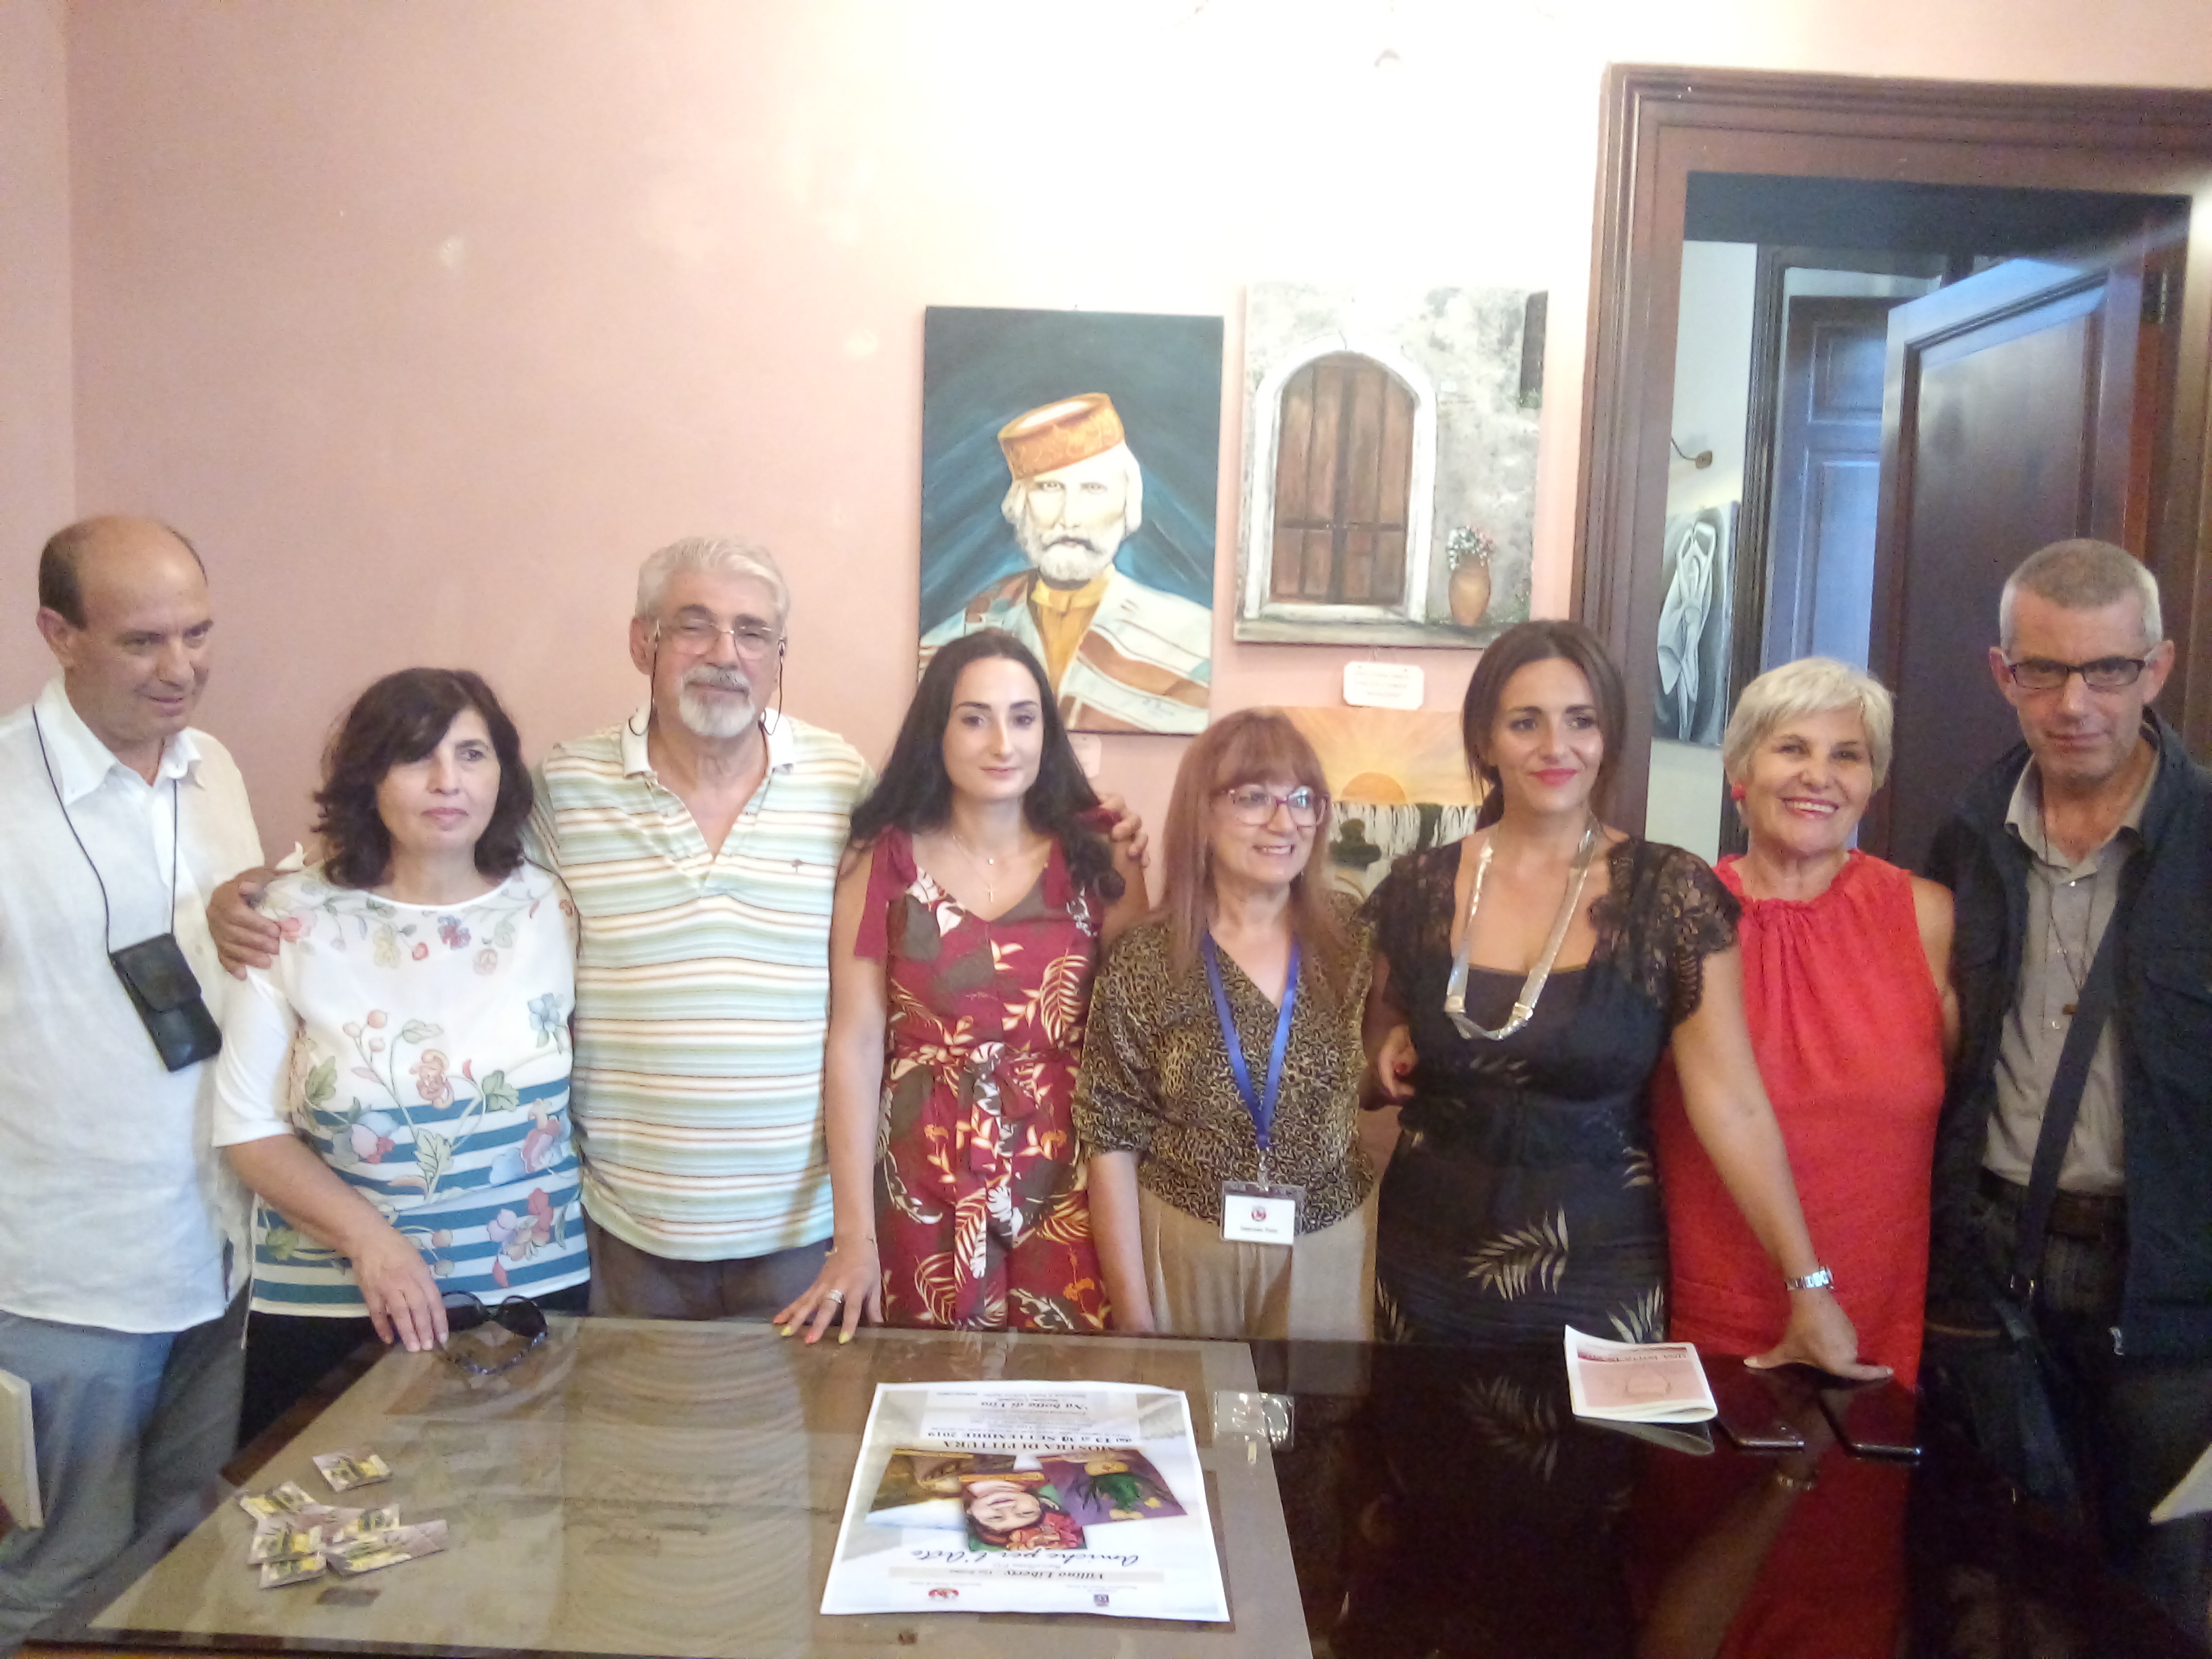 Barcellona PG. Inaugurata la mostra “Amiche per l’Arte”. Mariano Crisafulli ha presentato “Na botta di vita” 